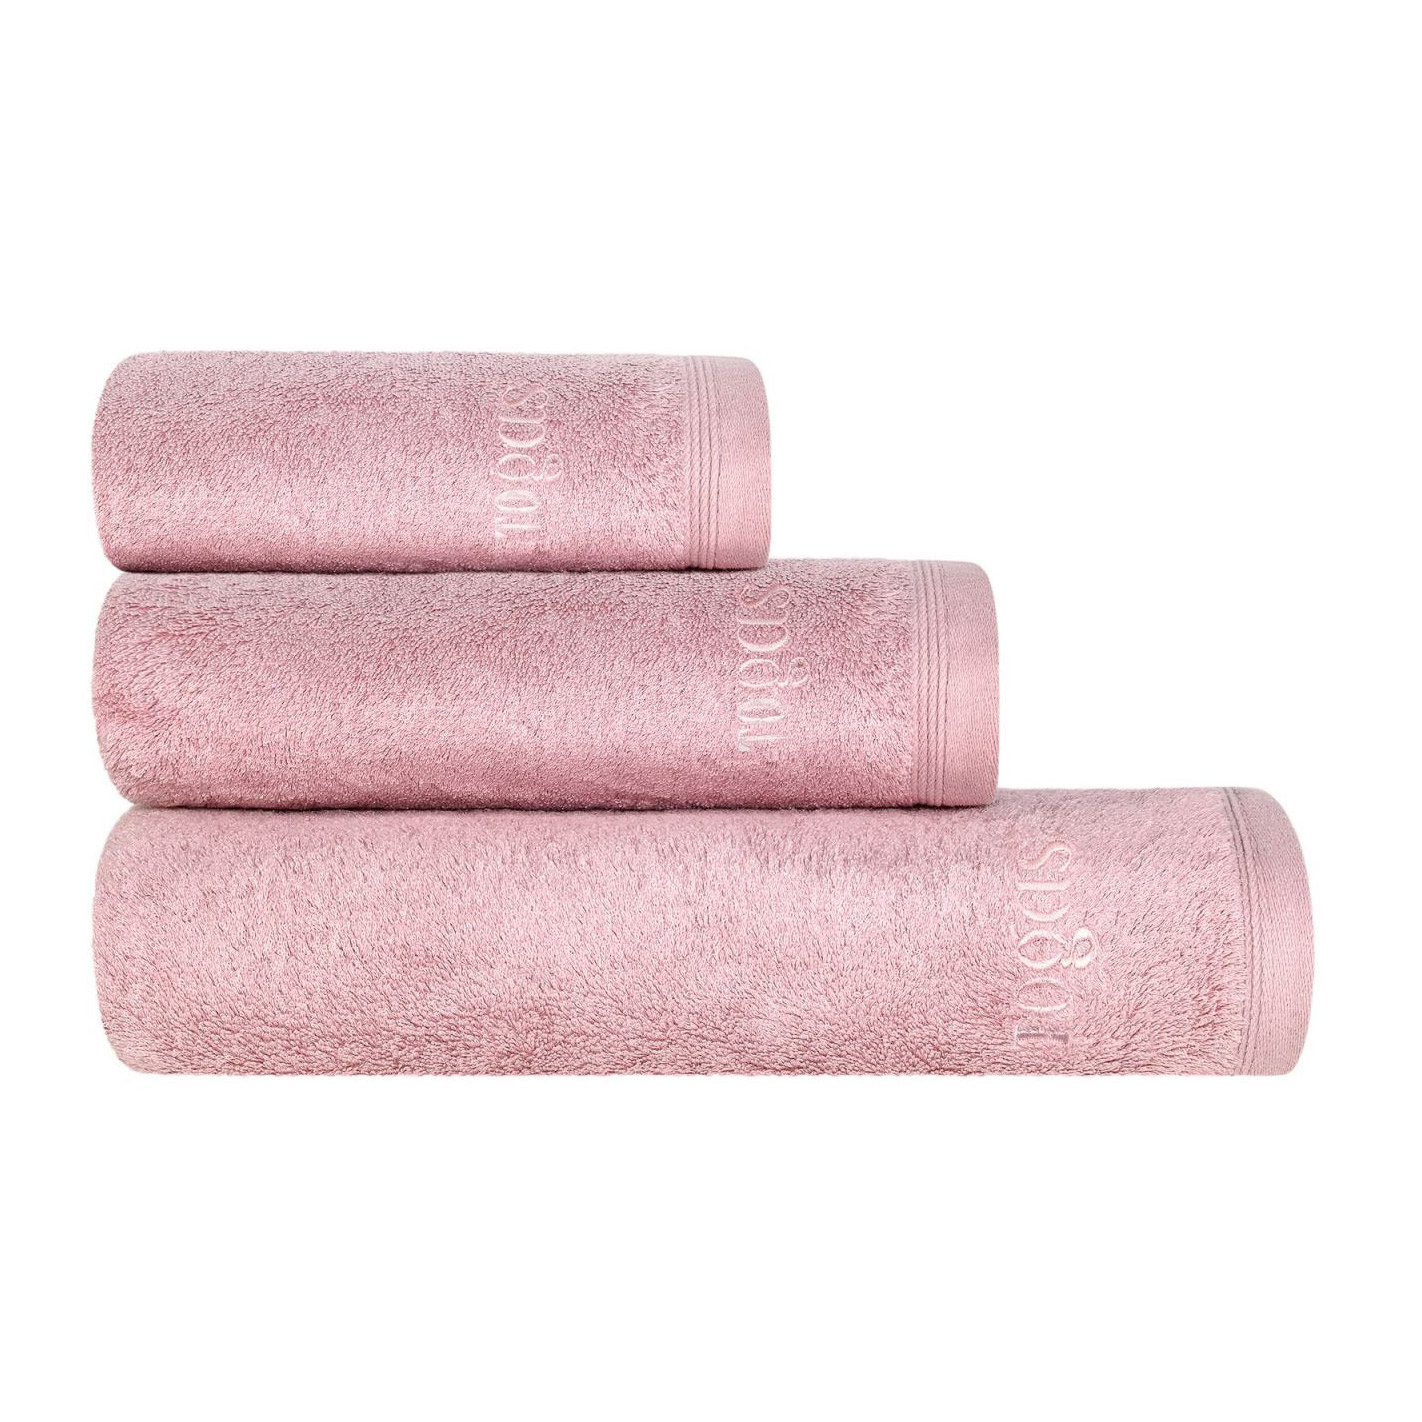 Полотенце Togas Пуатье розовое 50х100 см (10.00.01.1045) полотенце togas миа бел экру 50х100